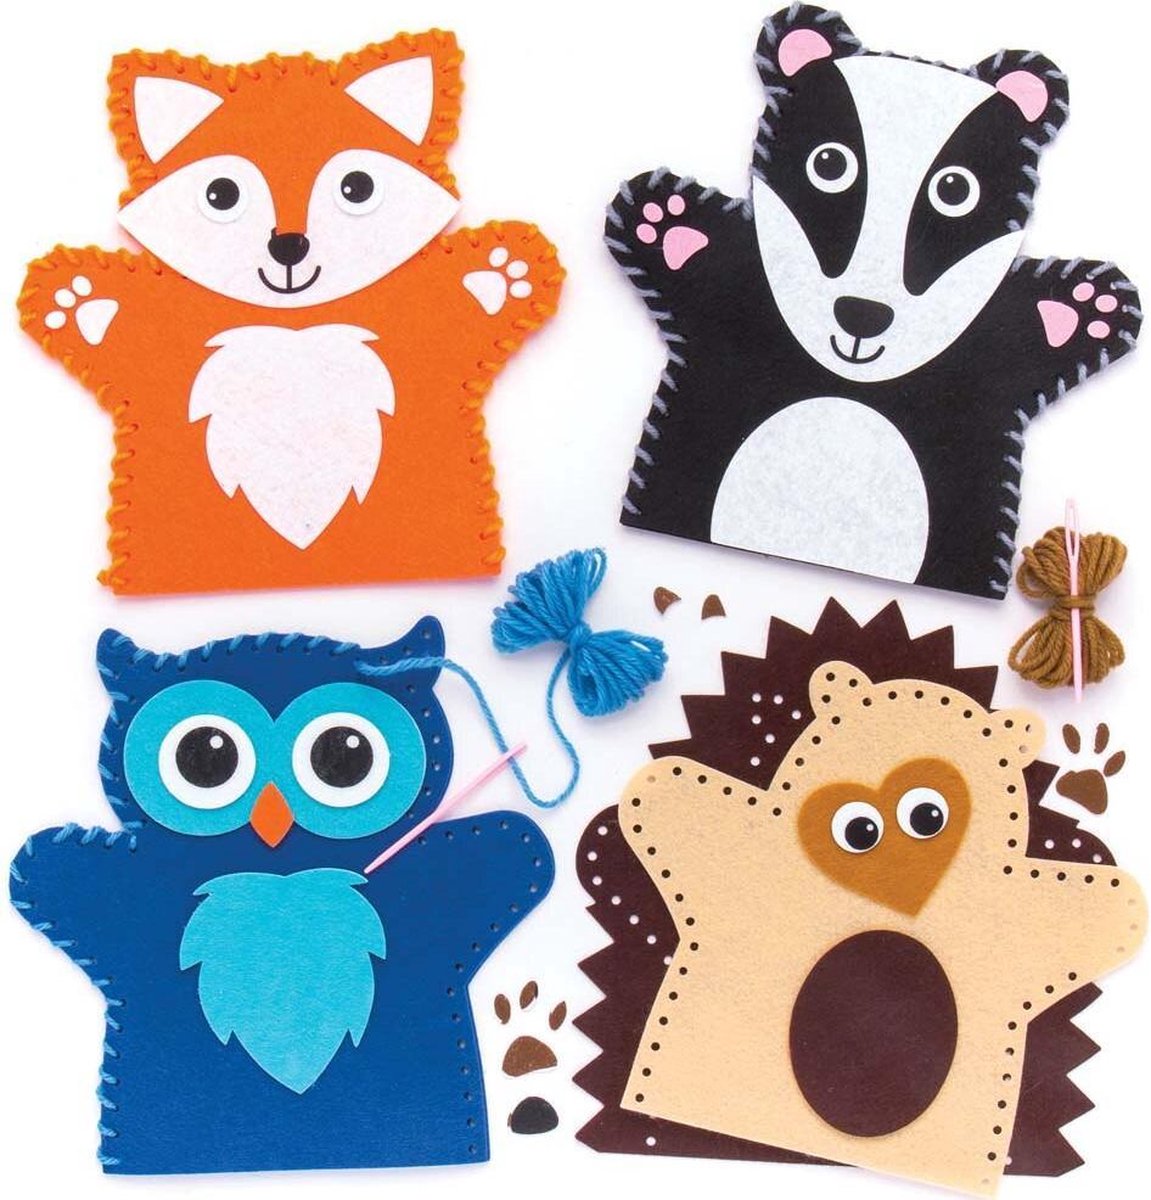 Naaisets met handpoppen van bosdieren (4 stuks per verpakking) Hobby- en knutselmaterialen voor kinderen - Baker Ross